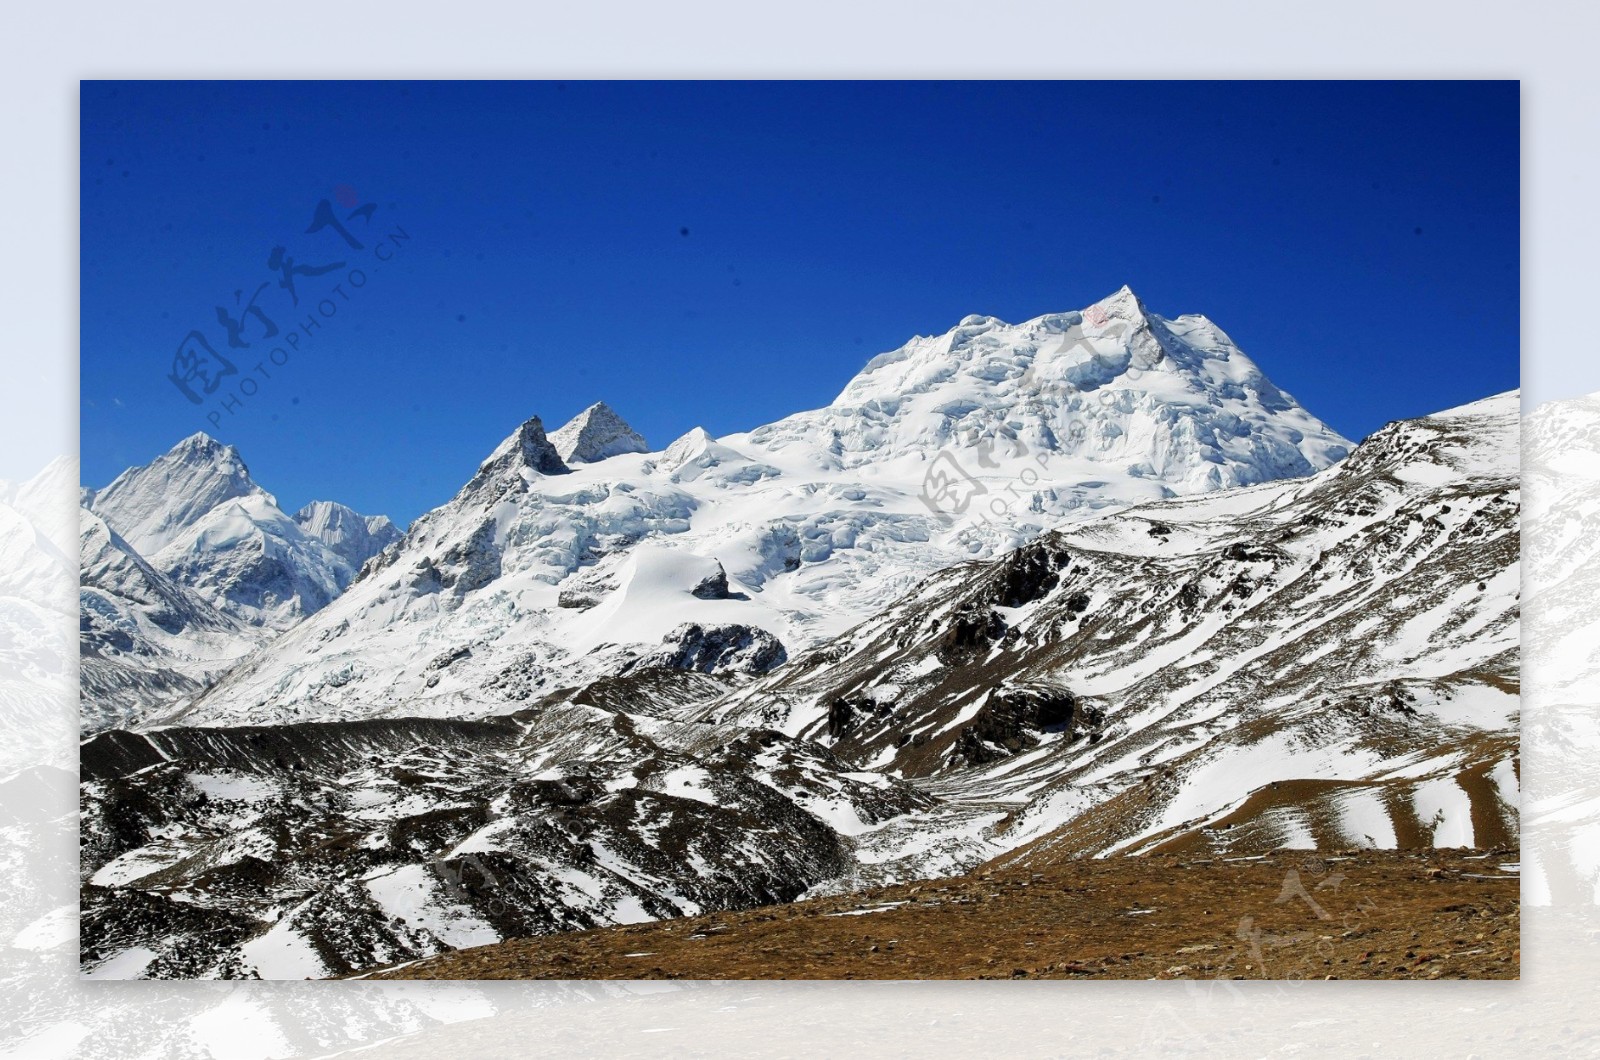 西藏景观图片